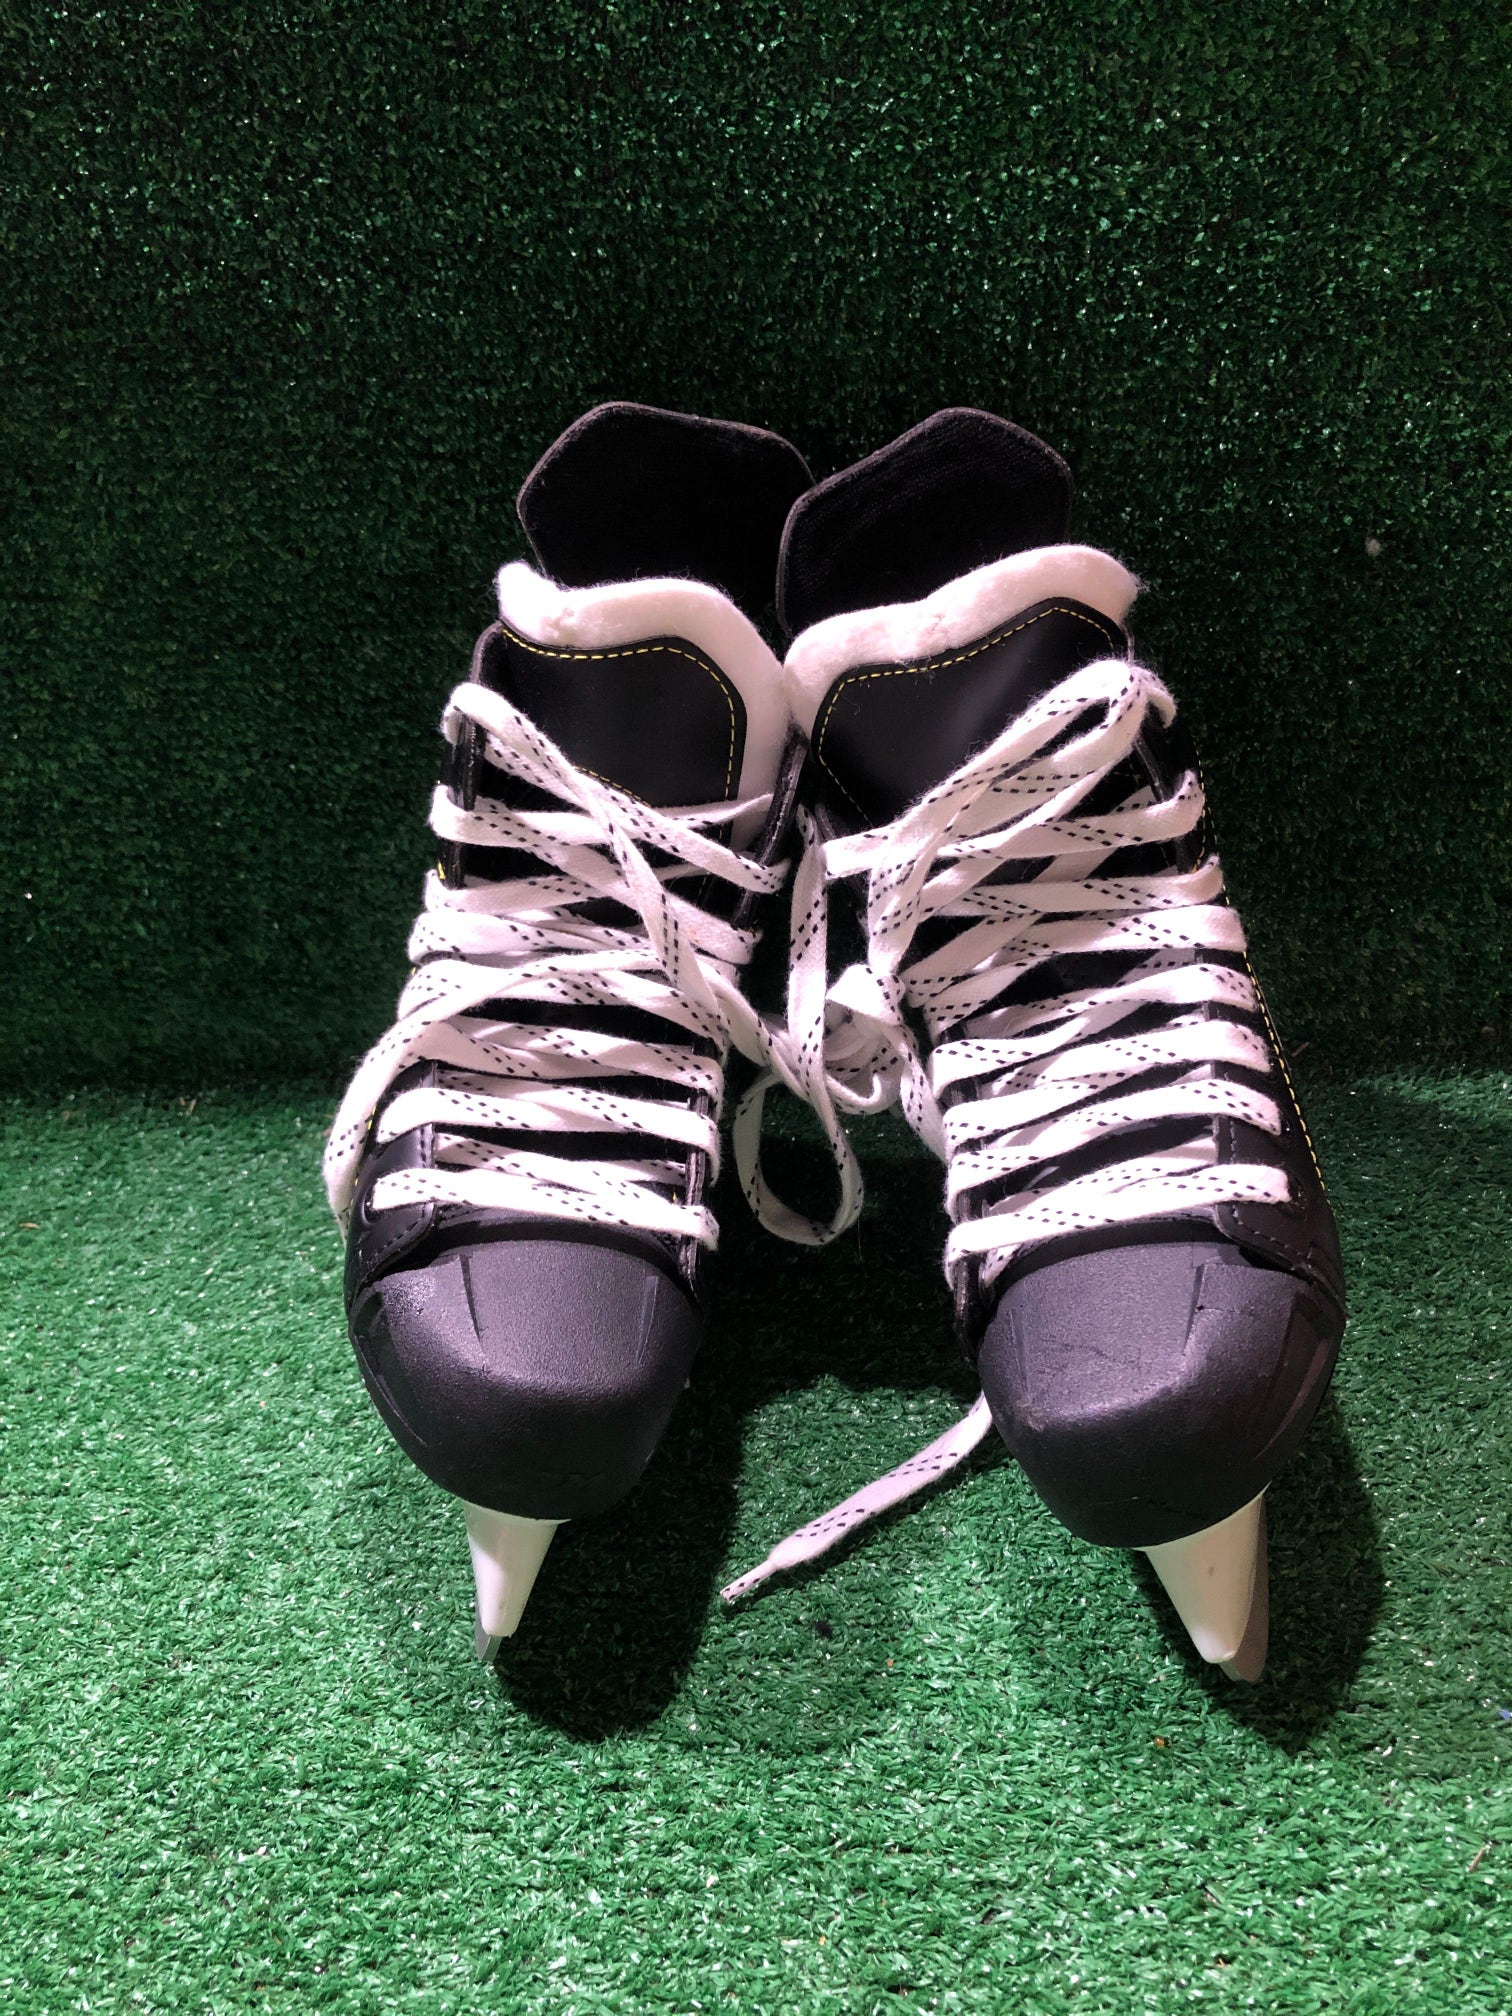 Ccm Tacks 9040 Hockey Skates 1.0 Skate Size